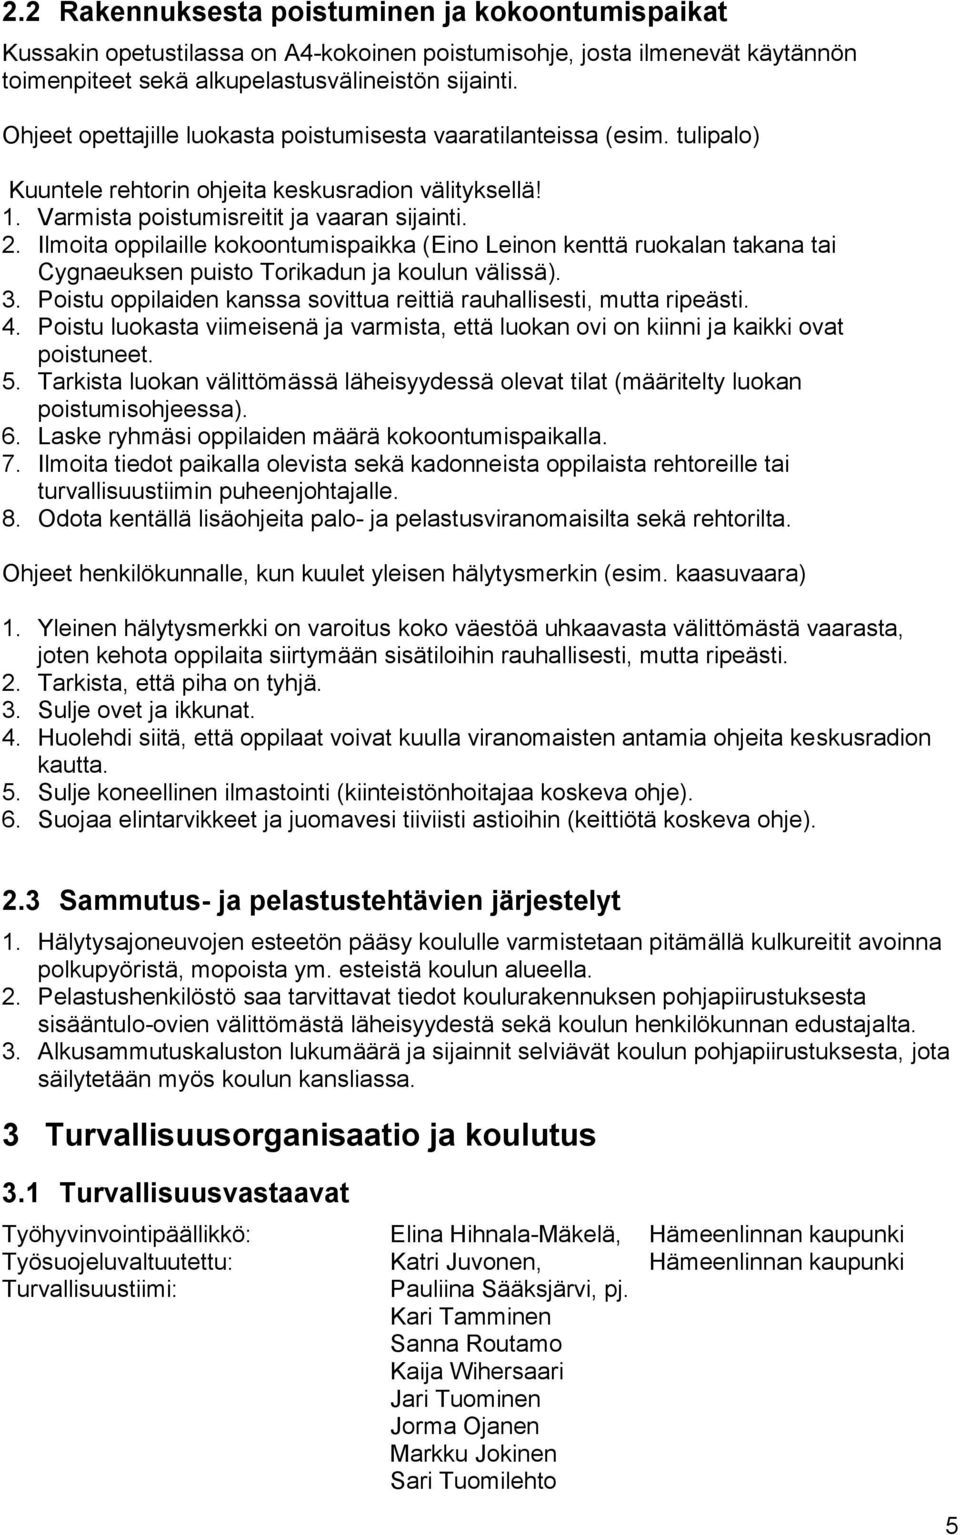 Ilmoita oppilaille kokoontumispaikka (Eino Leinon kenttä ruokalan takana tai Cygnaeuksen puisto Torikadun ja koulun välissä). 3.